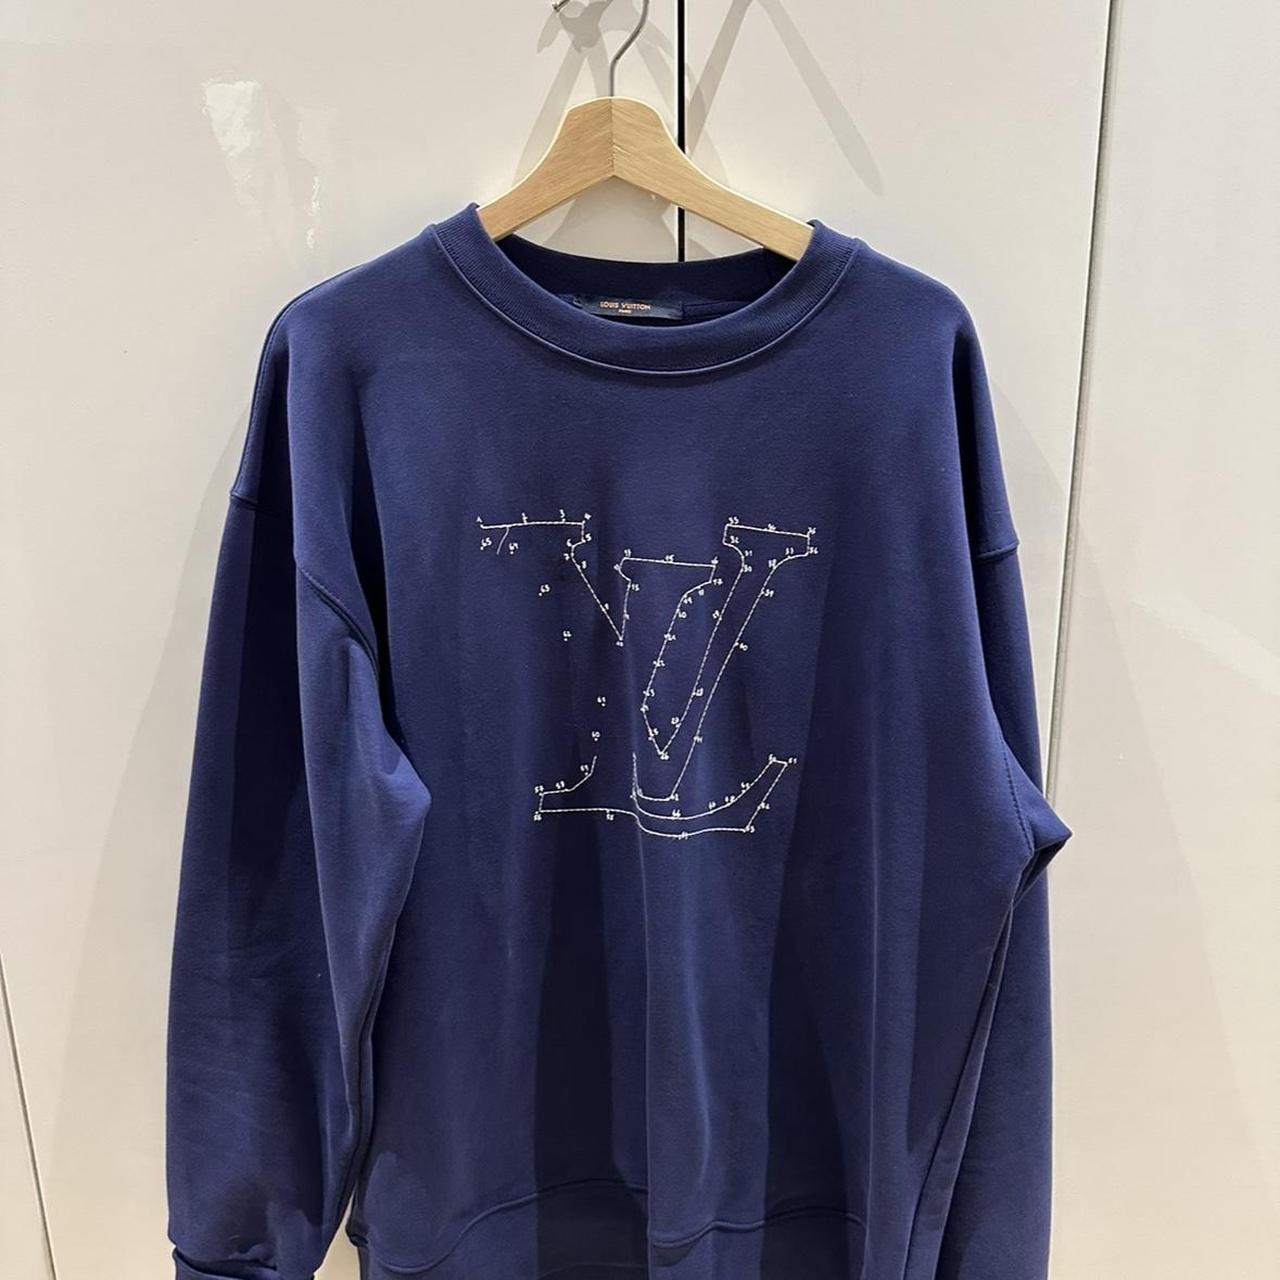 Louis Vuitton Stitch Print Embroidered Crewneck Sweatshirt navy